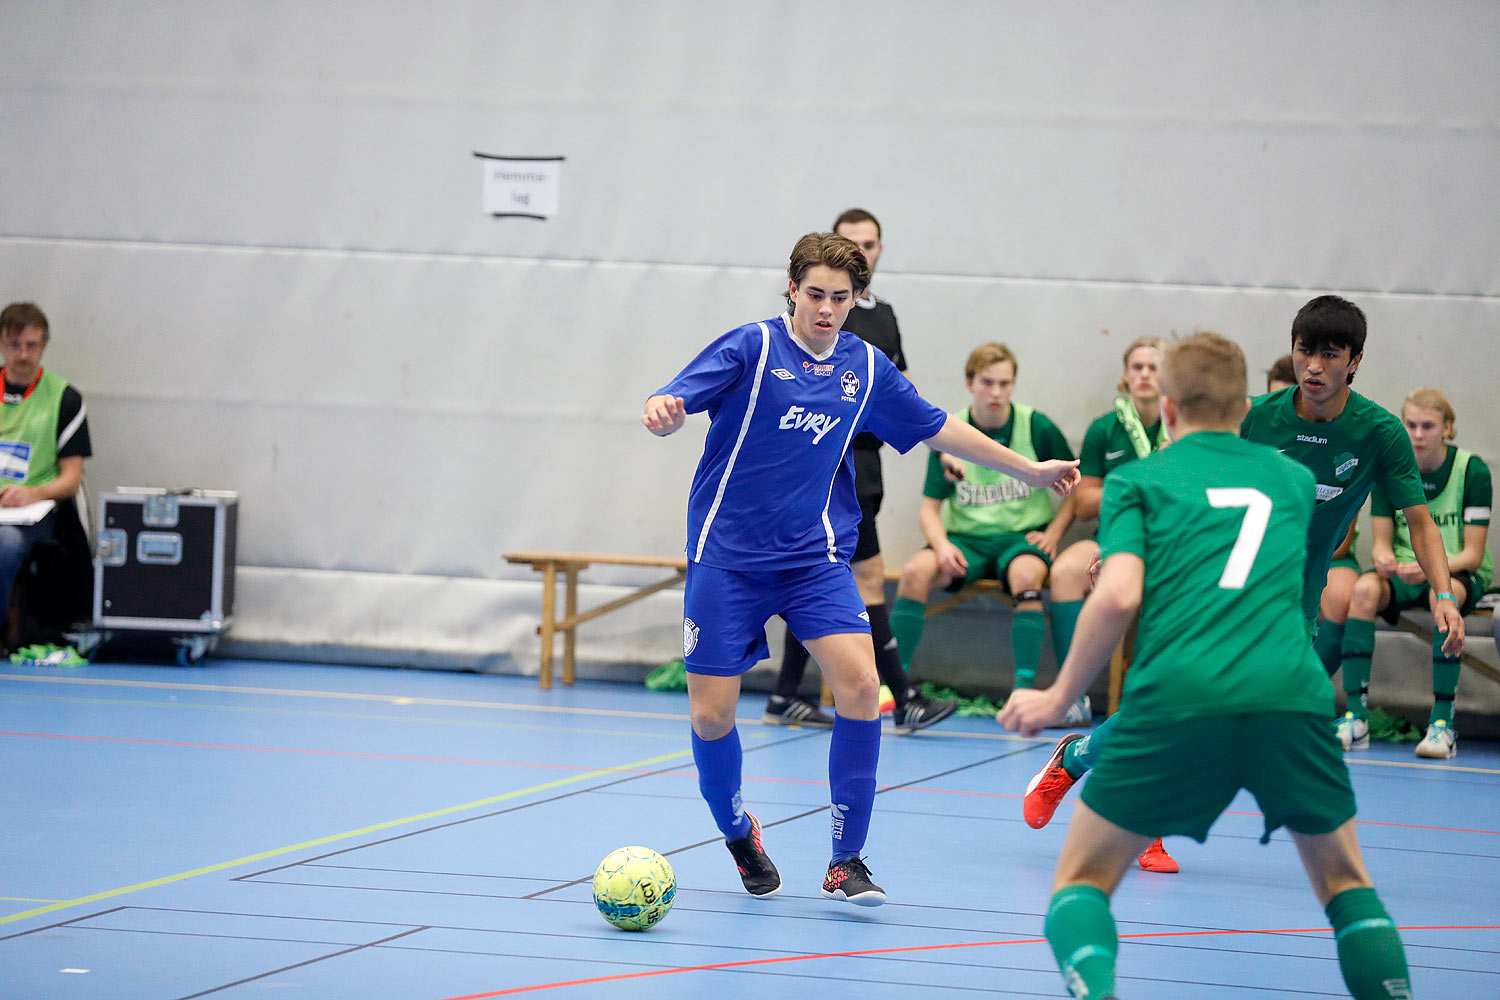 Skövde Futsalcup Herrjuniorer Våmbs IF-IF Hallby Fotboll,herr,Arena Skövde,Skövde,Sverige,Skövde Futsalcup 2016,Futsal,2016,142299